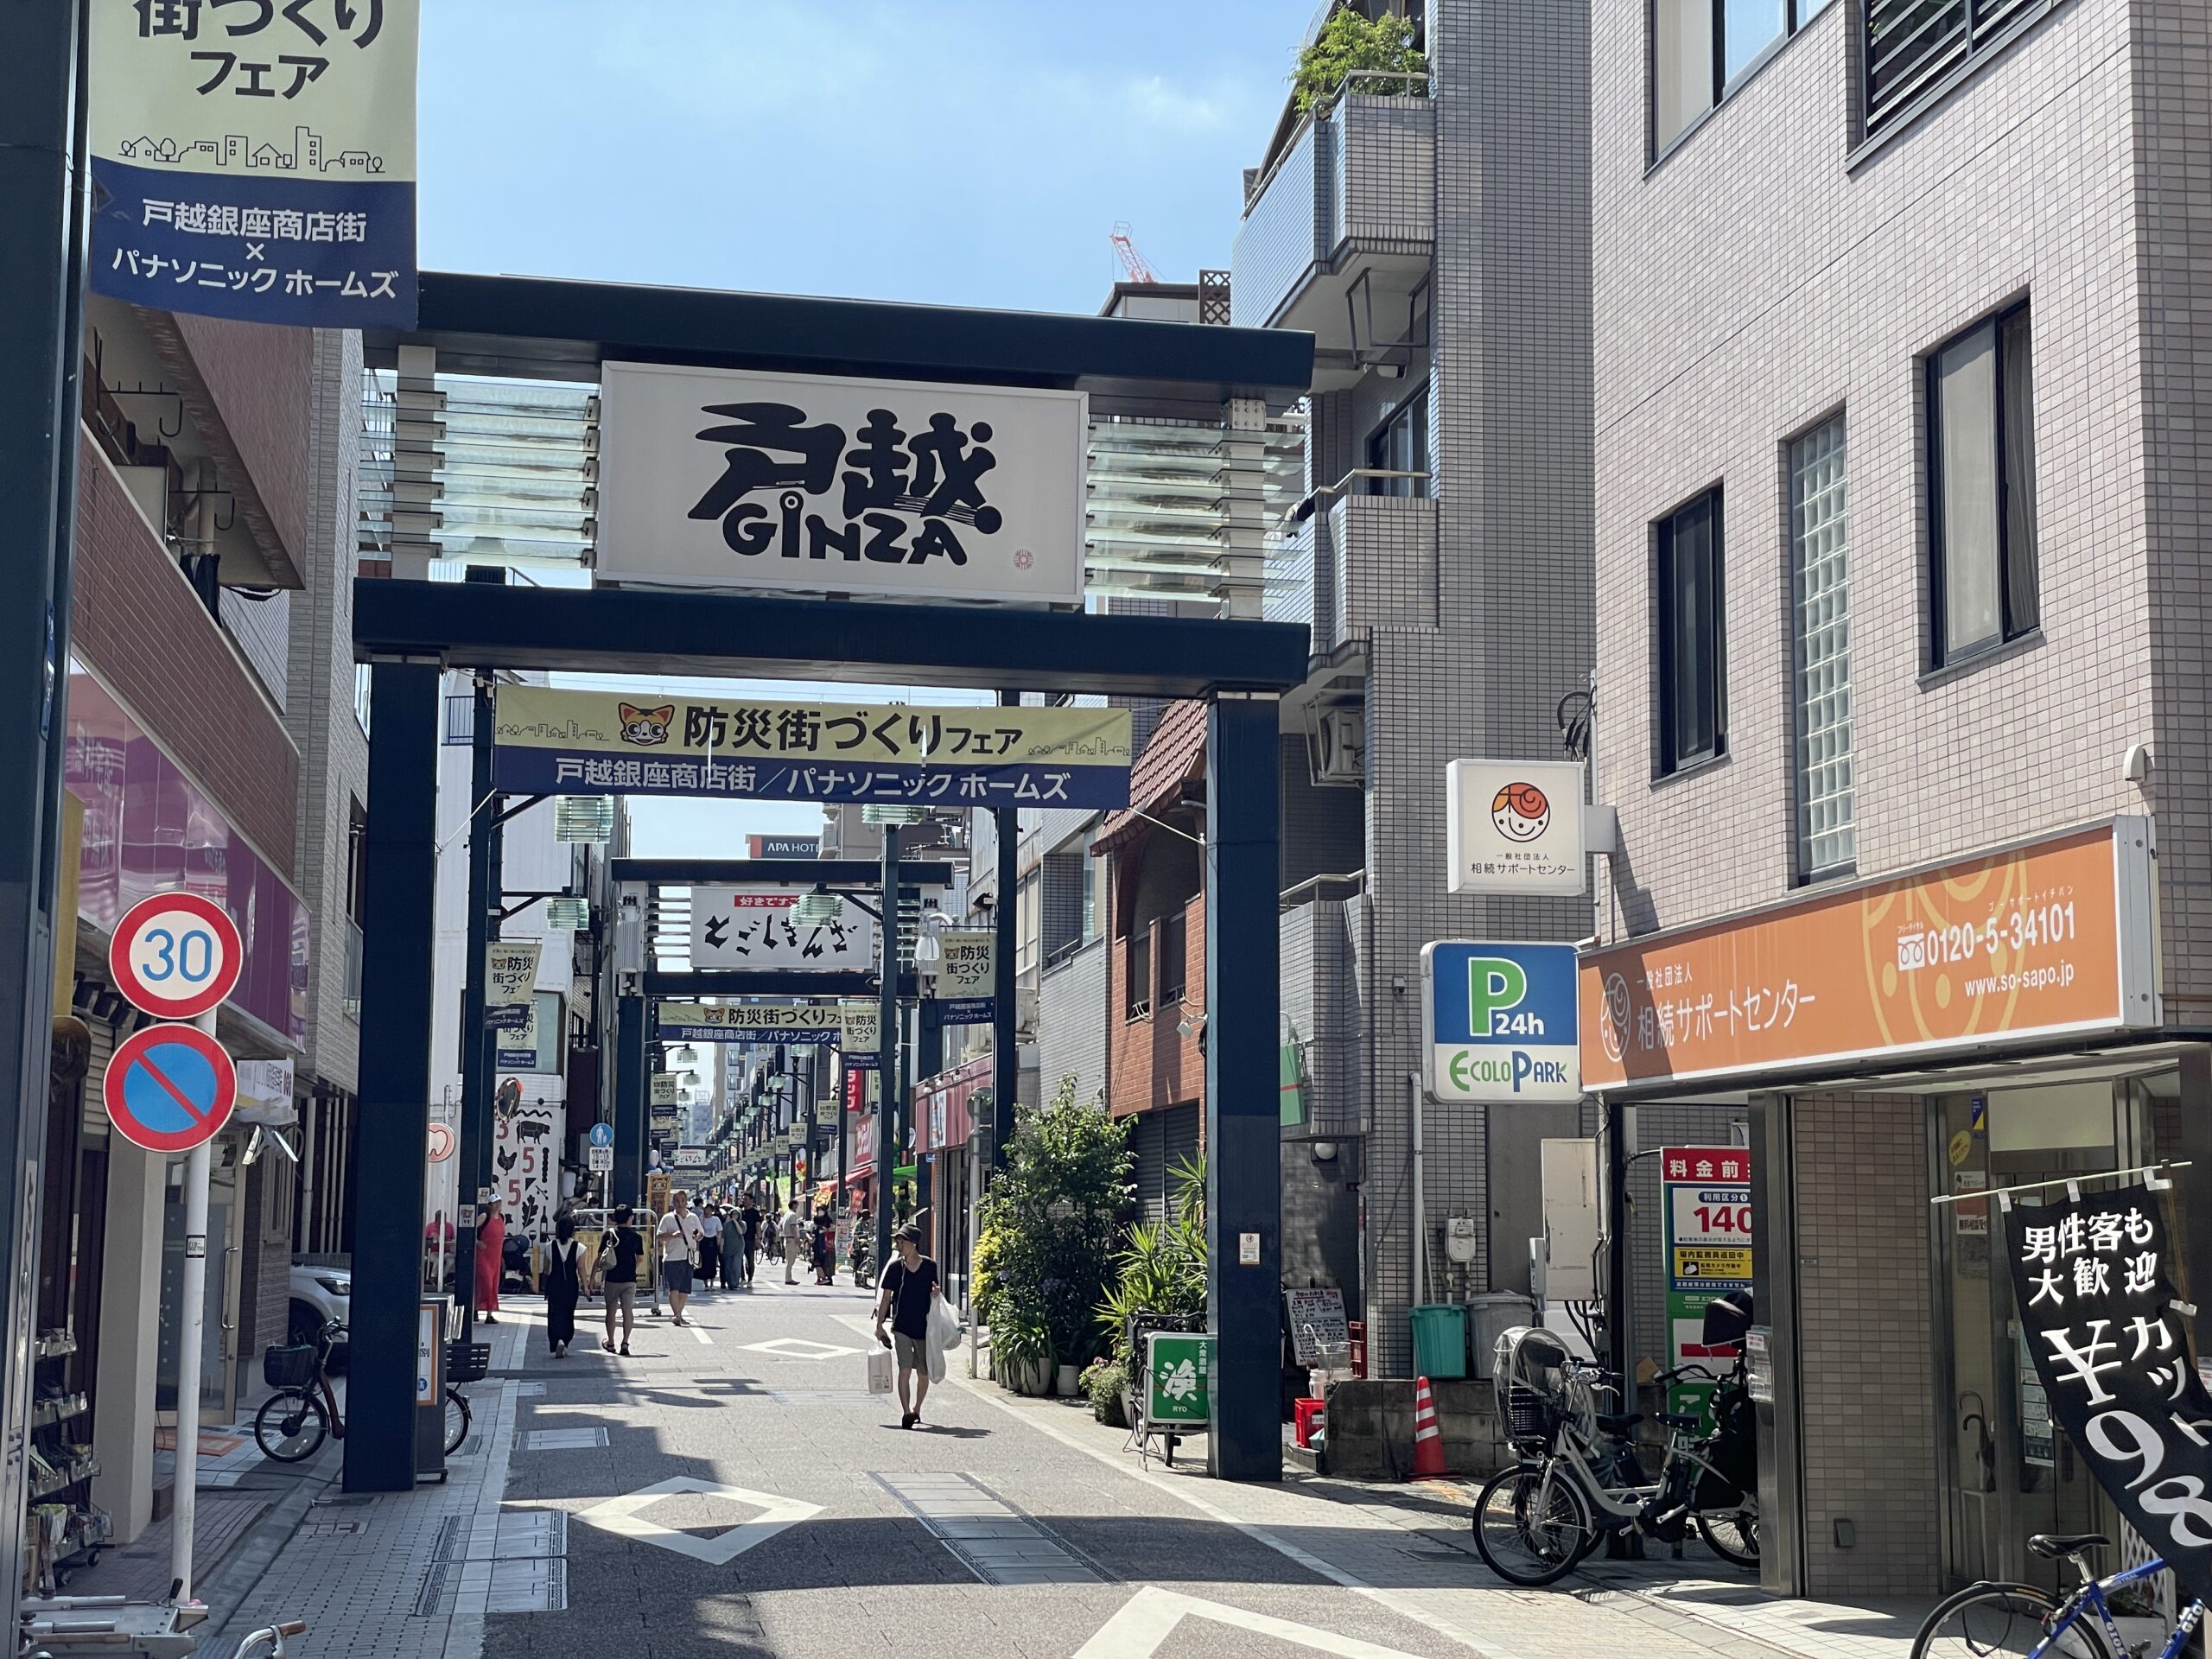 Die Togoshi-Ginza - eine alte Einkaufsstrasse mitten in Shinagawa-ku